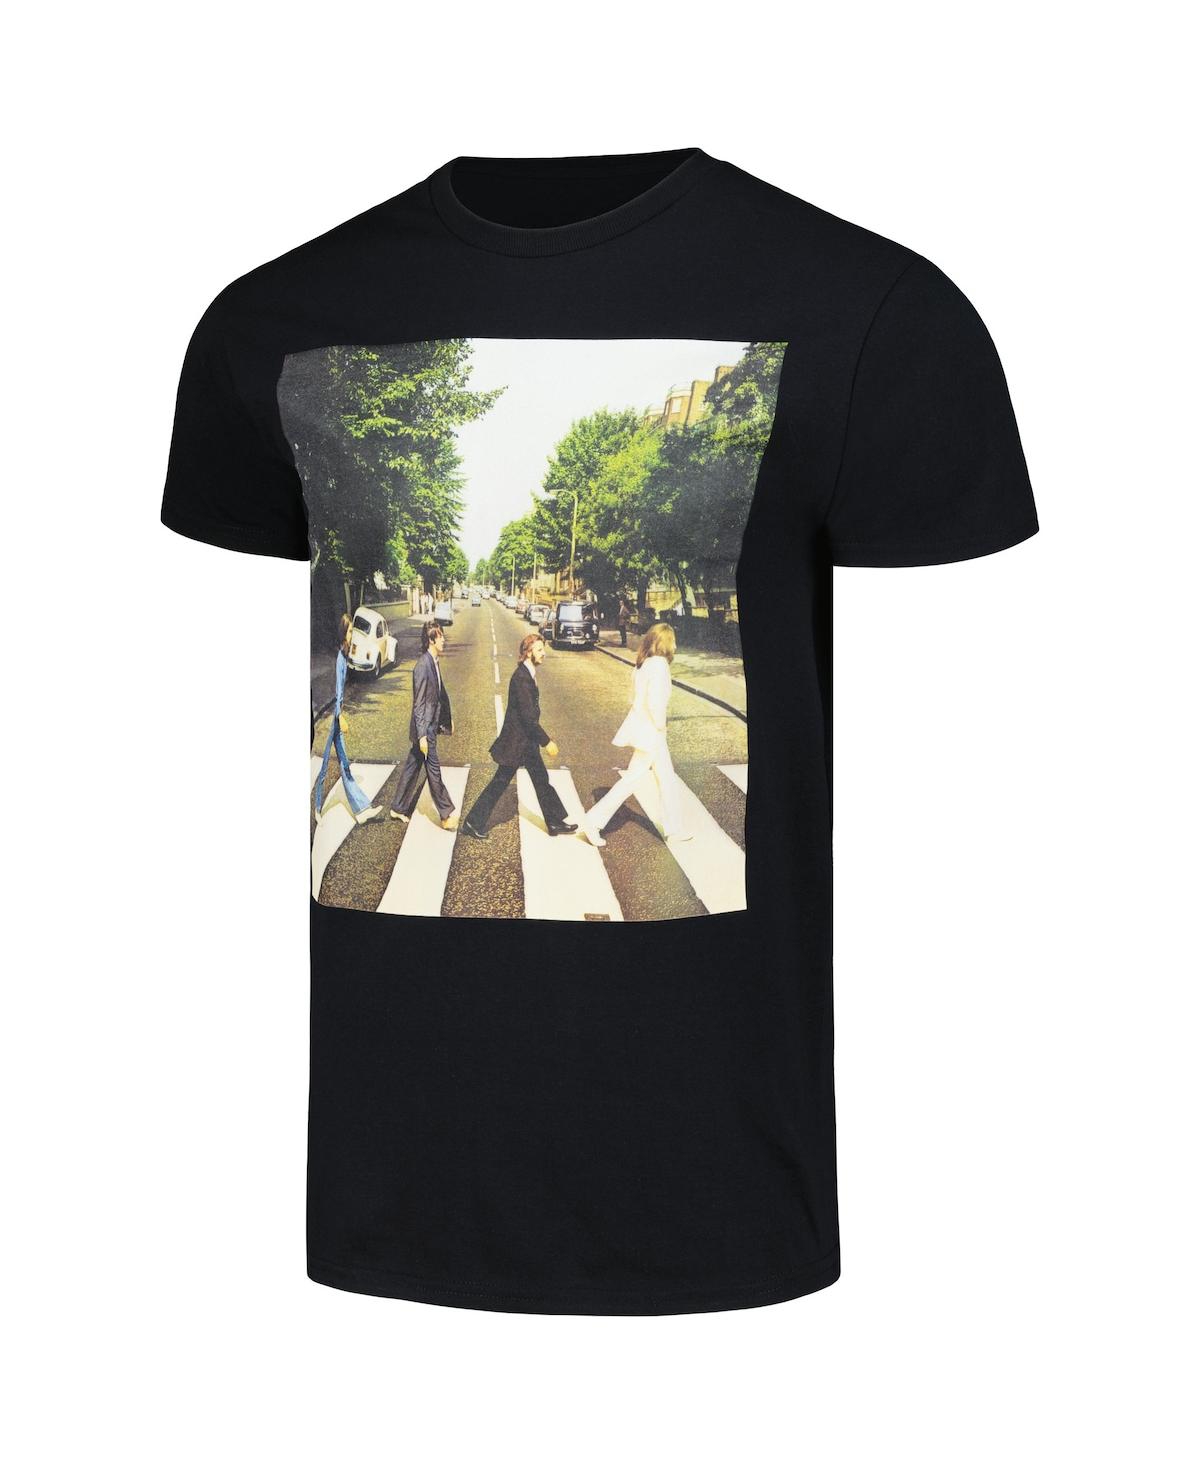 Shop Bravado Men's And Women's Black The Beatles Abbey Road T-shirt